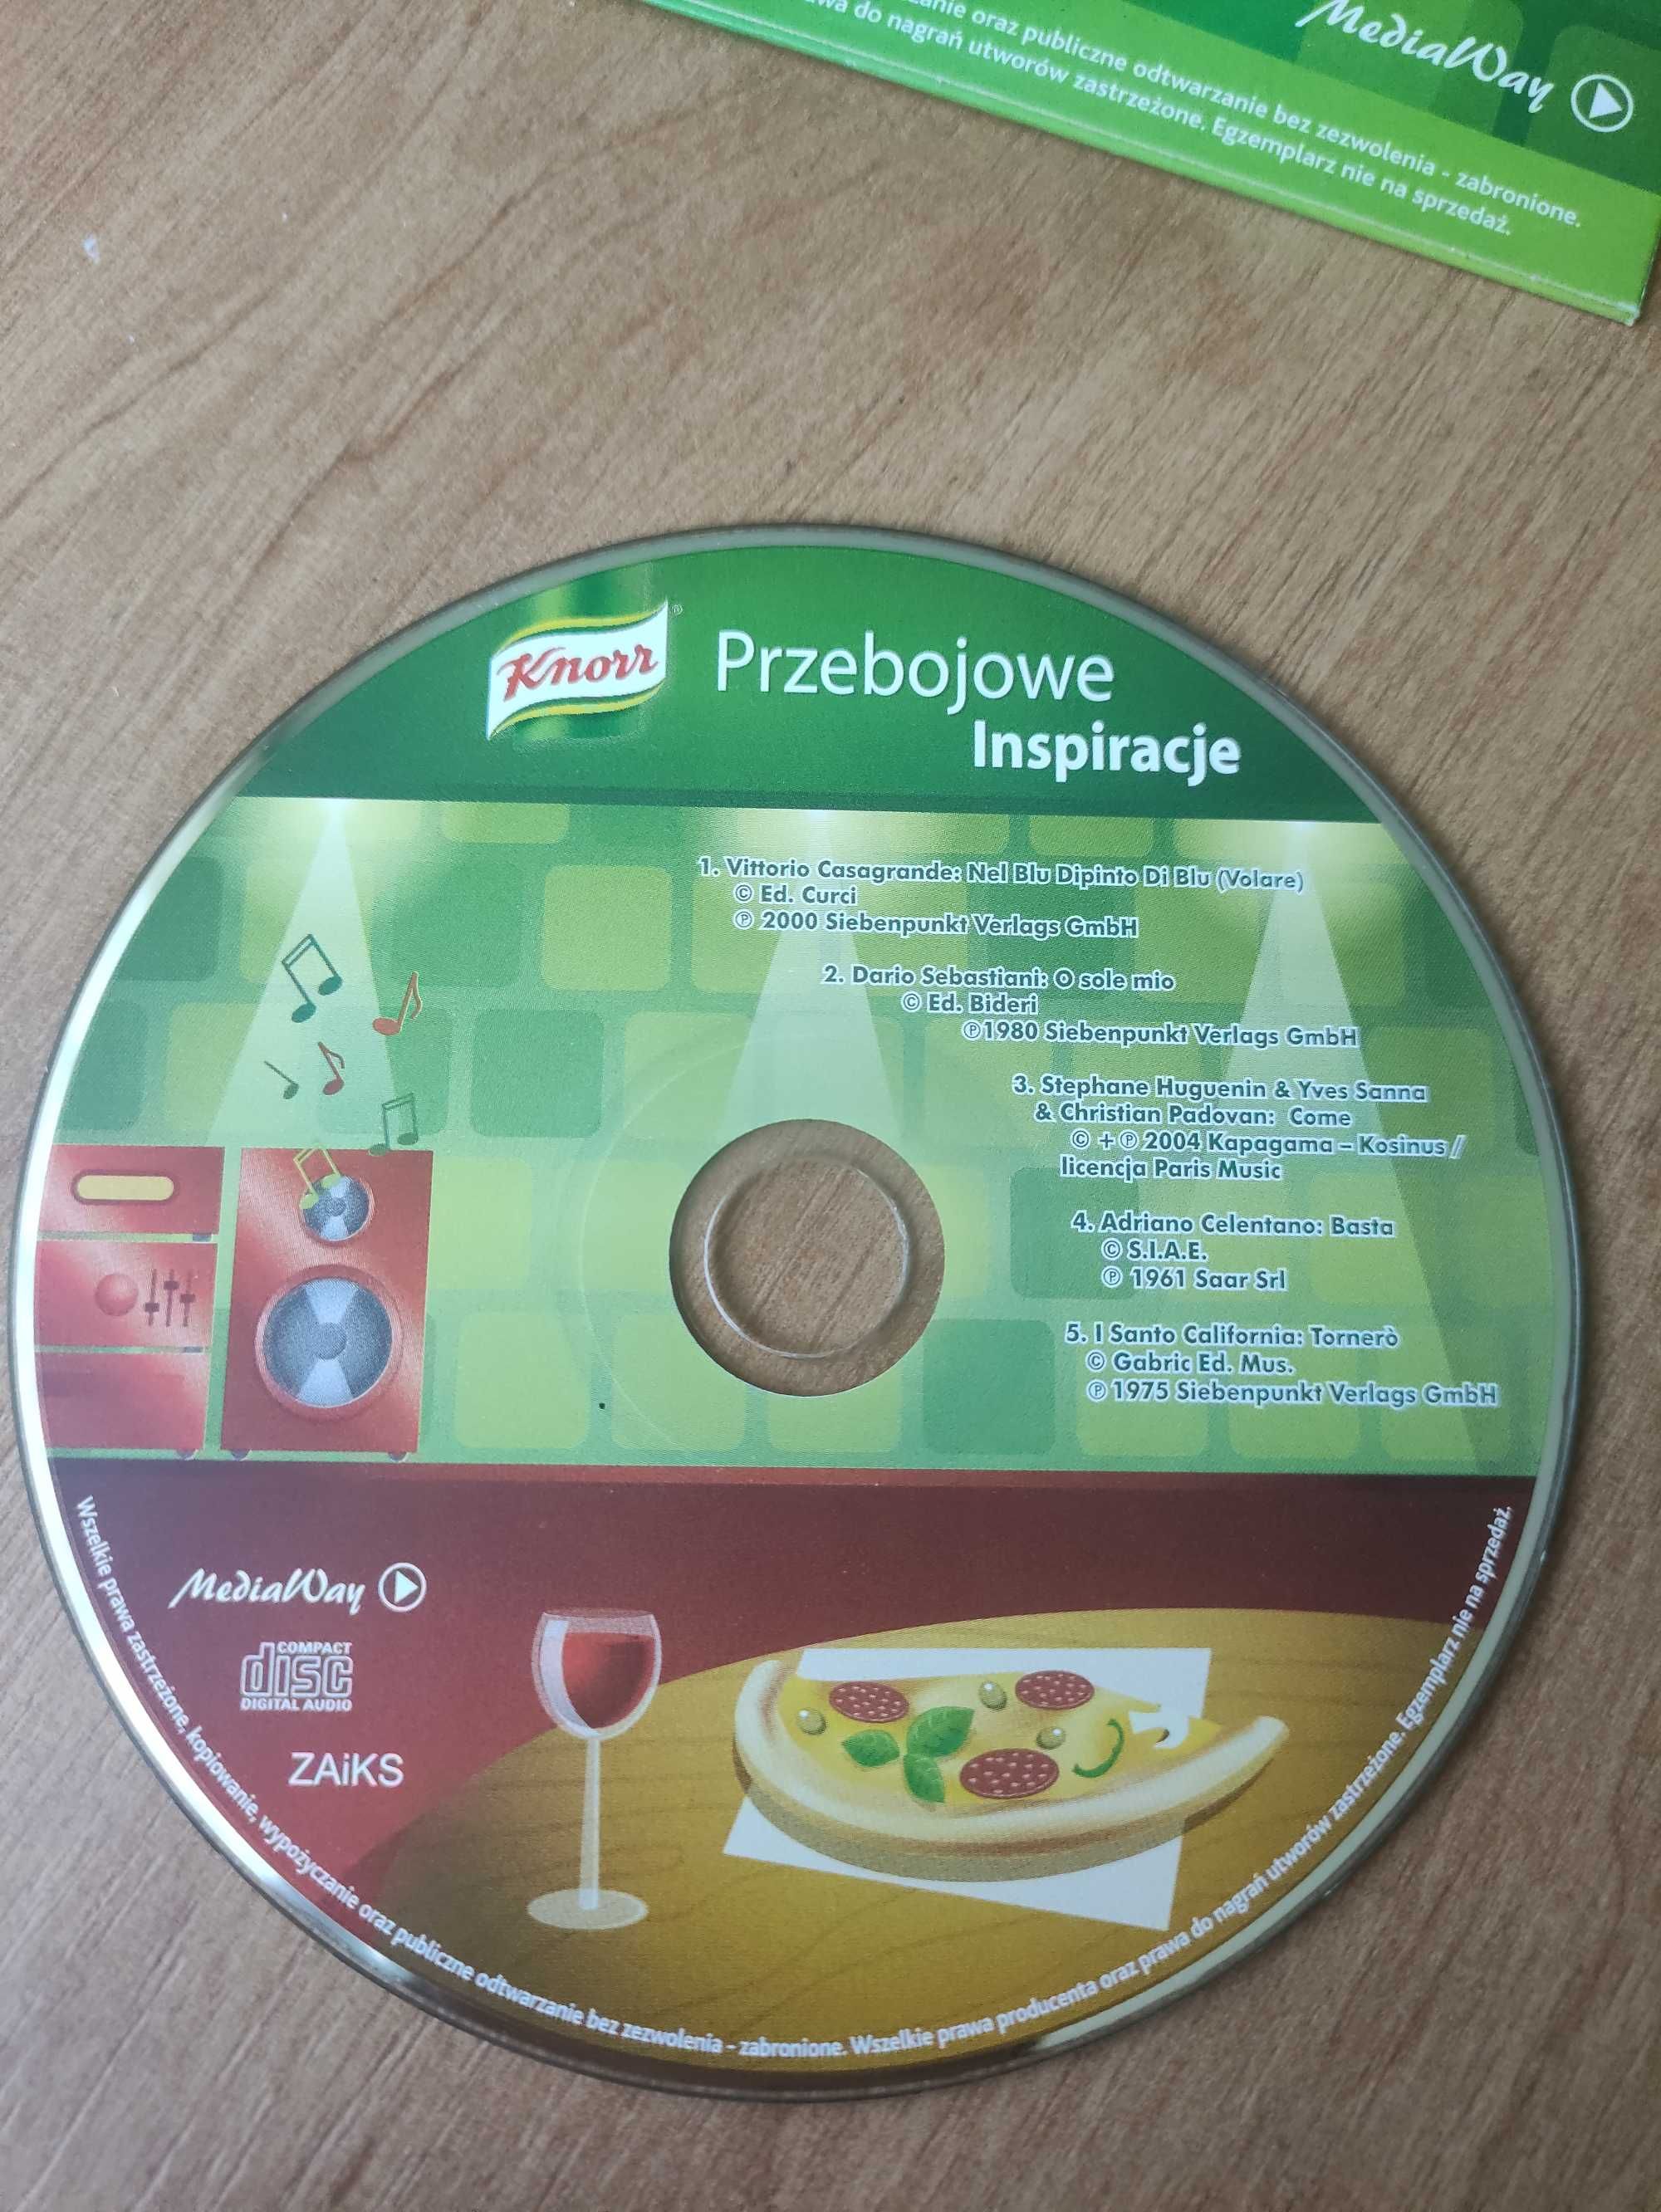 Płyta CD Przebojowe inspiracje Knorr